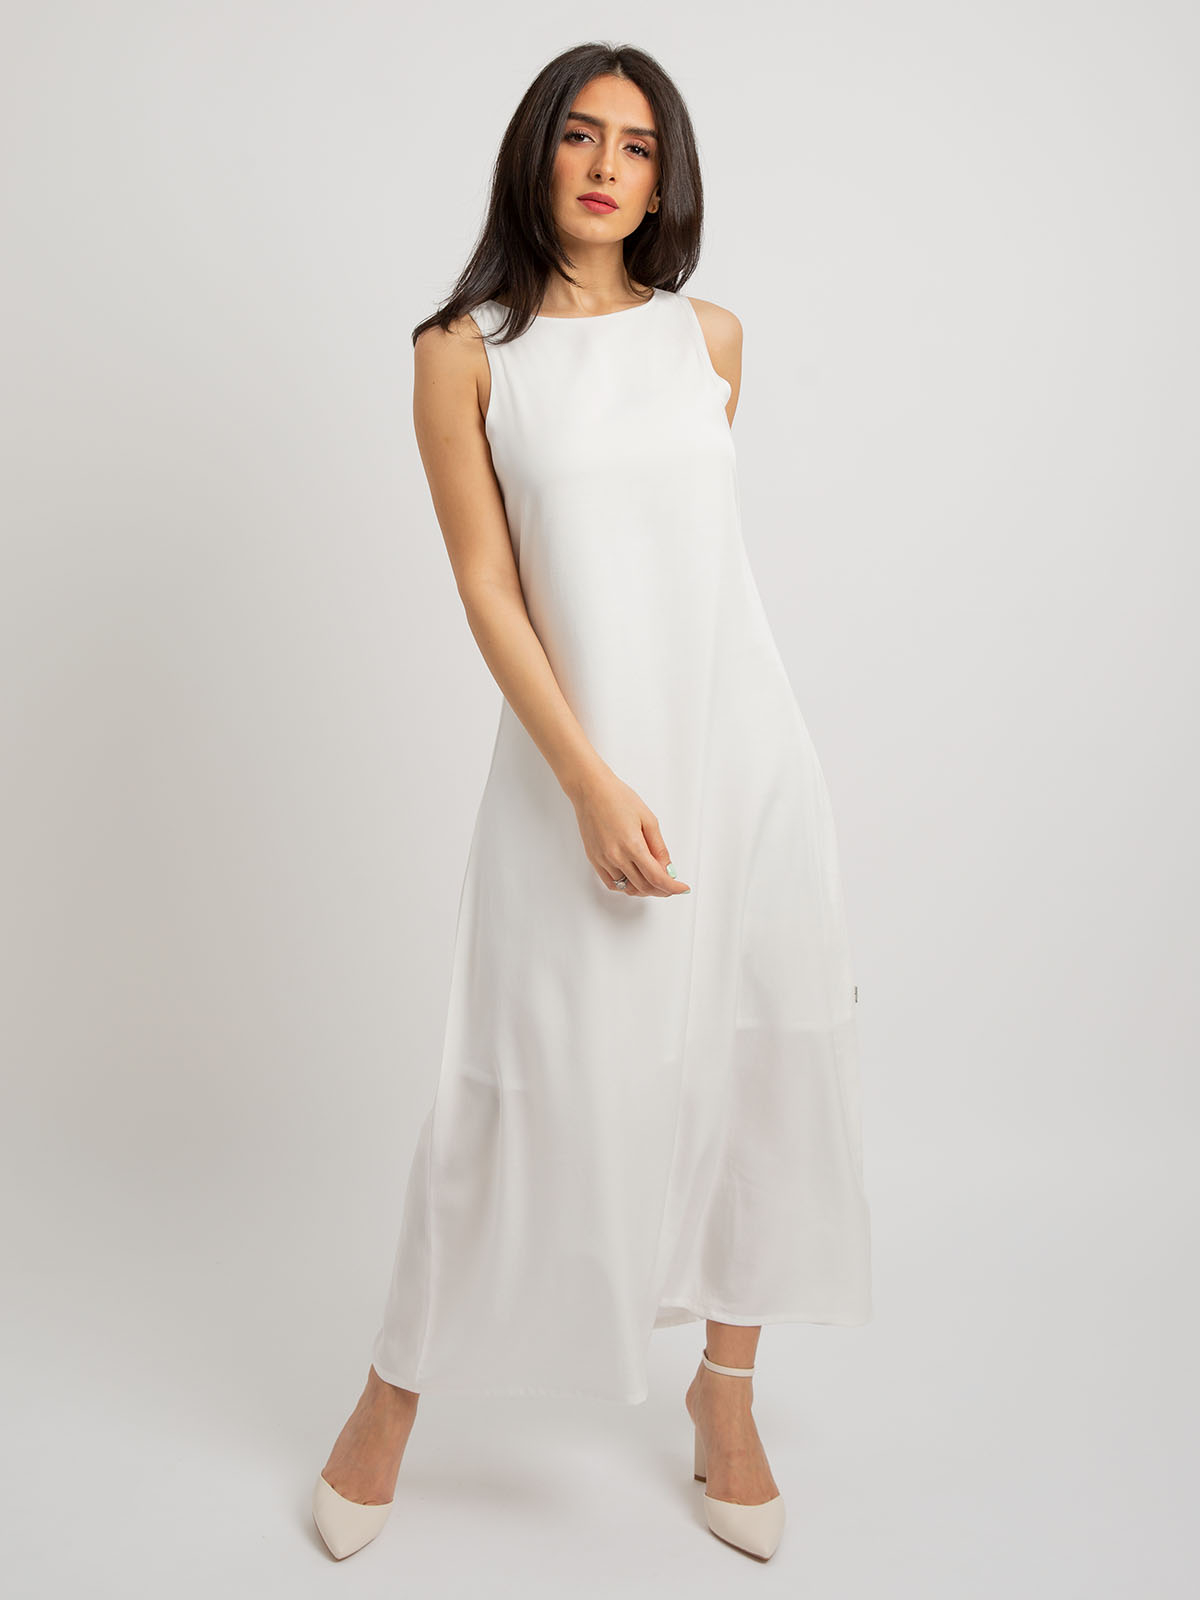 White - Sleeveless Long Dress